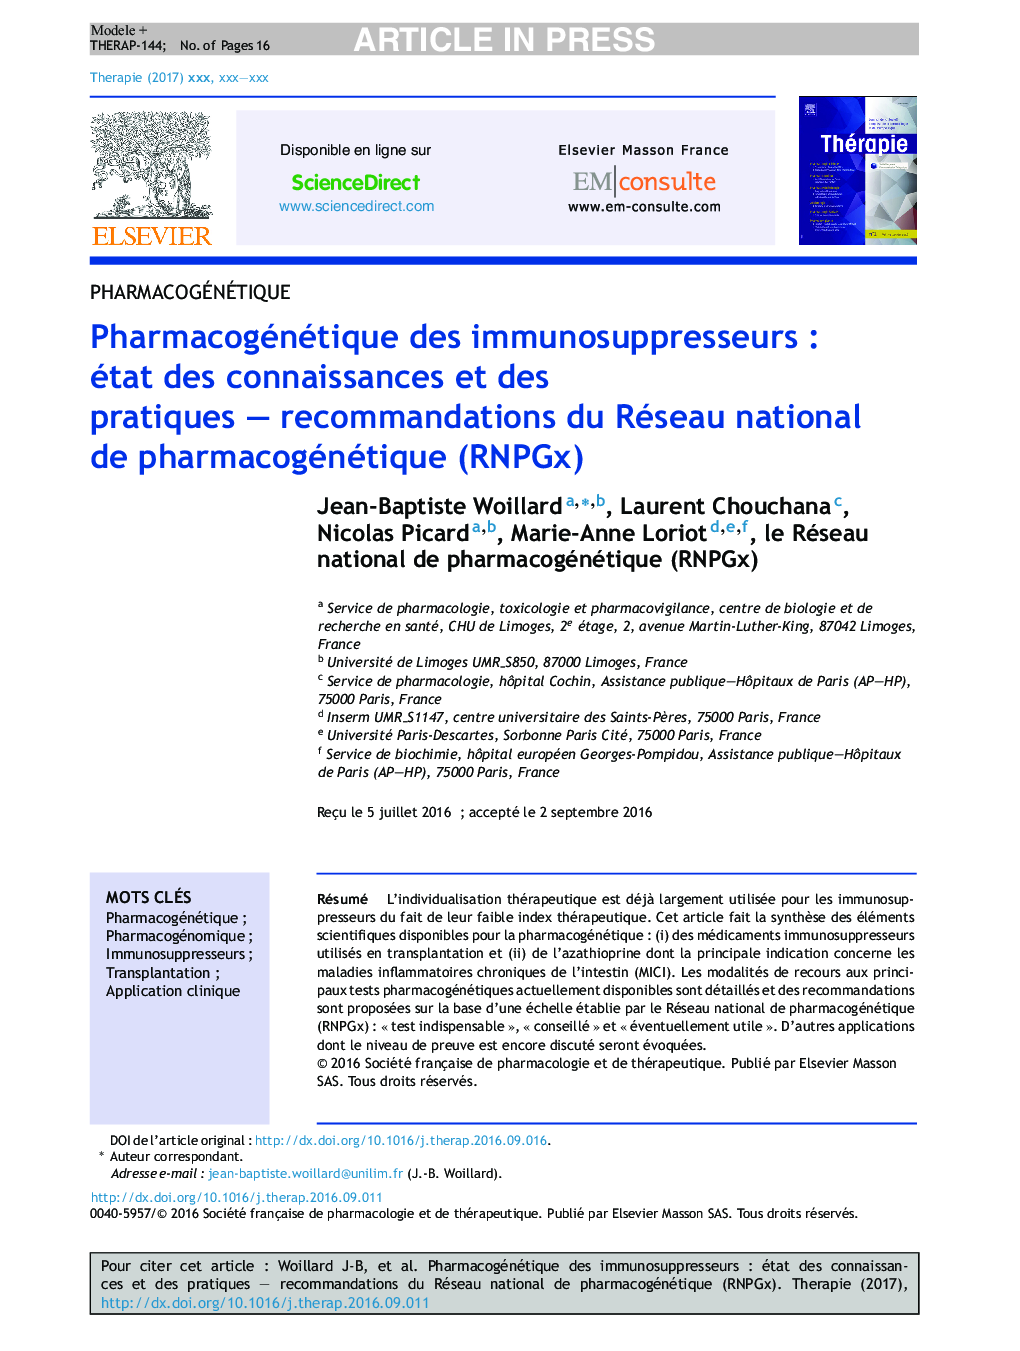 Pharmacogénétique des immunosuppresseursÂ : état des connaissances et des pratiquesÂ -Â recommandations du Réseau national de pharmacogénétique (RNPGx)